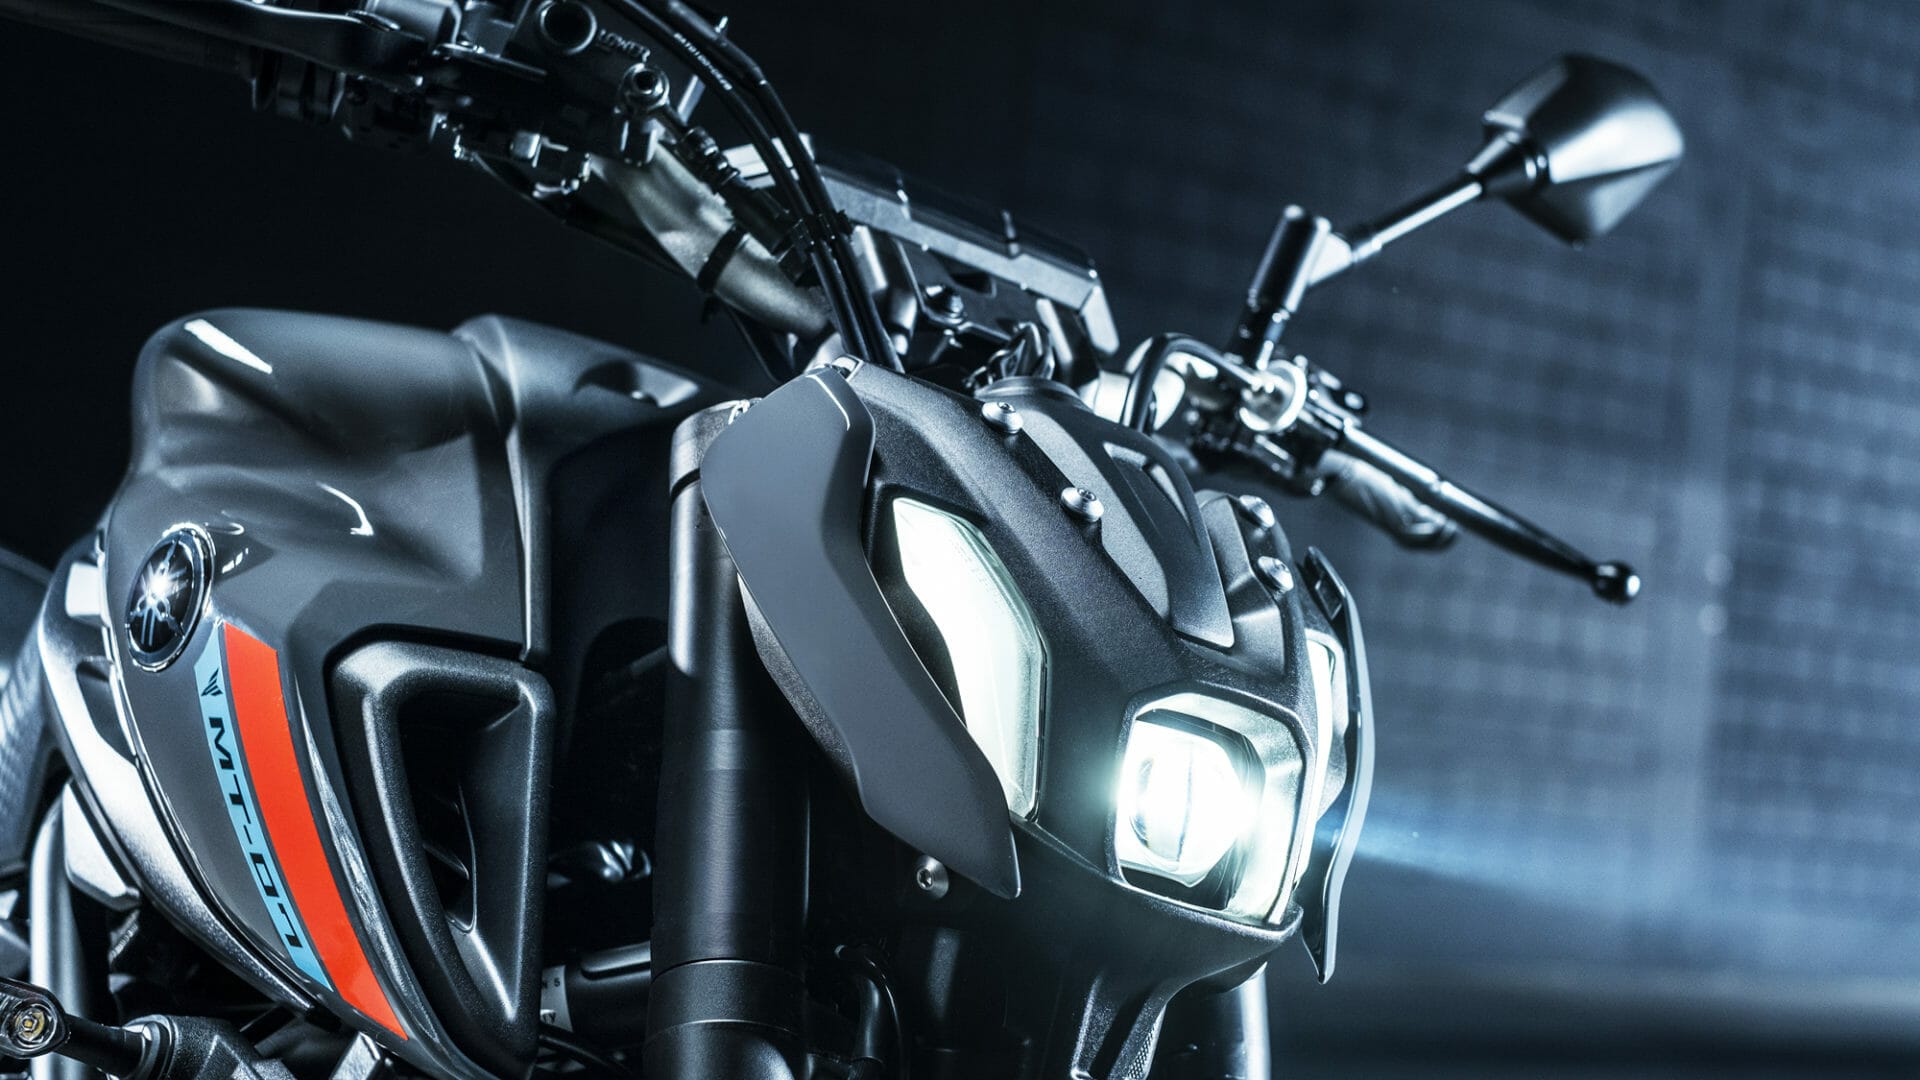 Neue Yamaha MT-07 (2021) vorgestellt
- auch in der MOTORRAD NACHRICHTEN APP